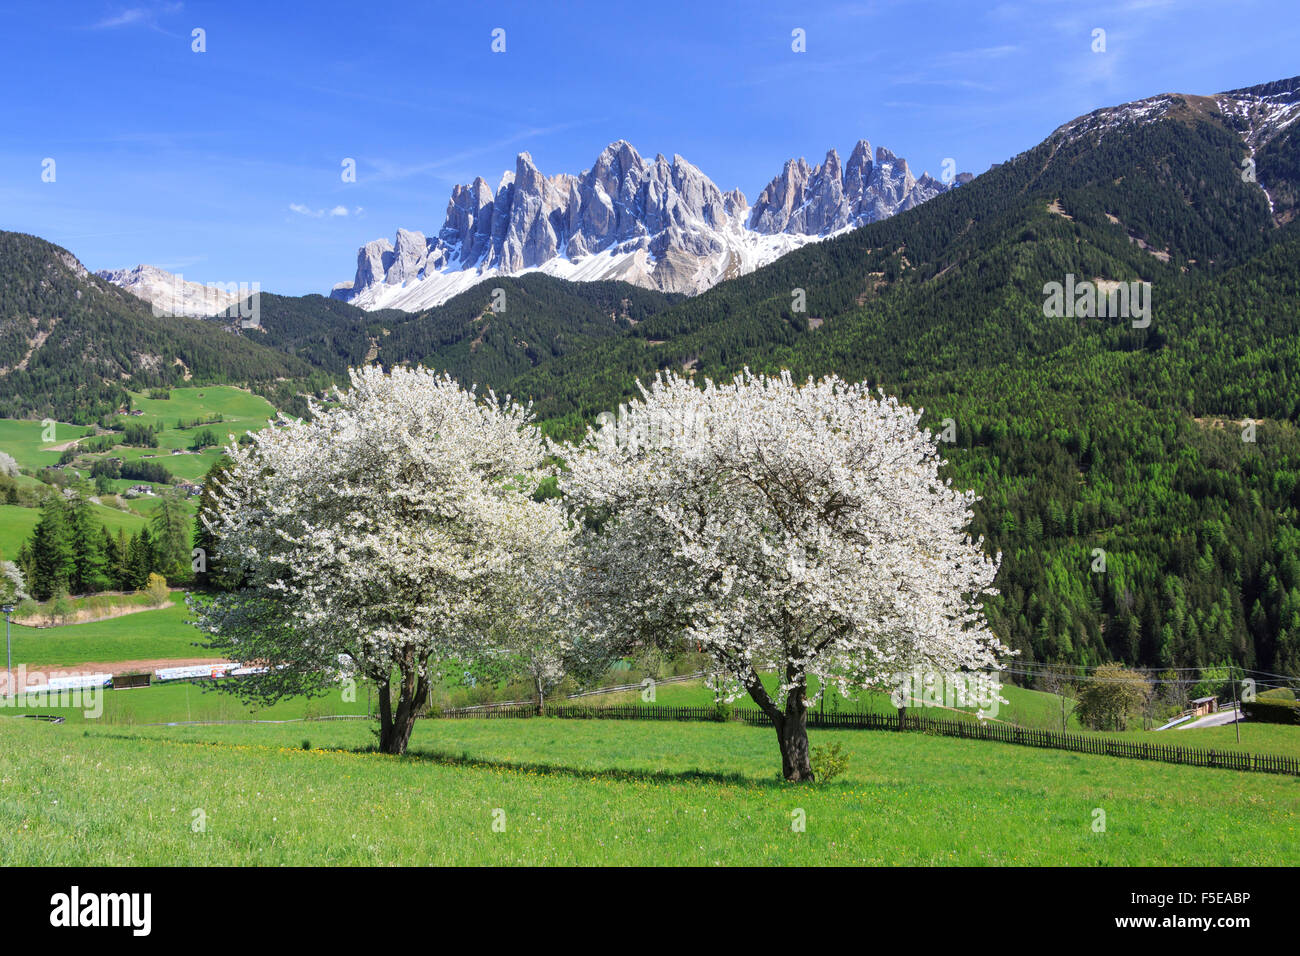 L'Odle en arrière-plan amélioré par la floraison des arbres, Funes, vallée du Tyrol du Sud, Dolomites, Italie, Europe Banque D'Images